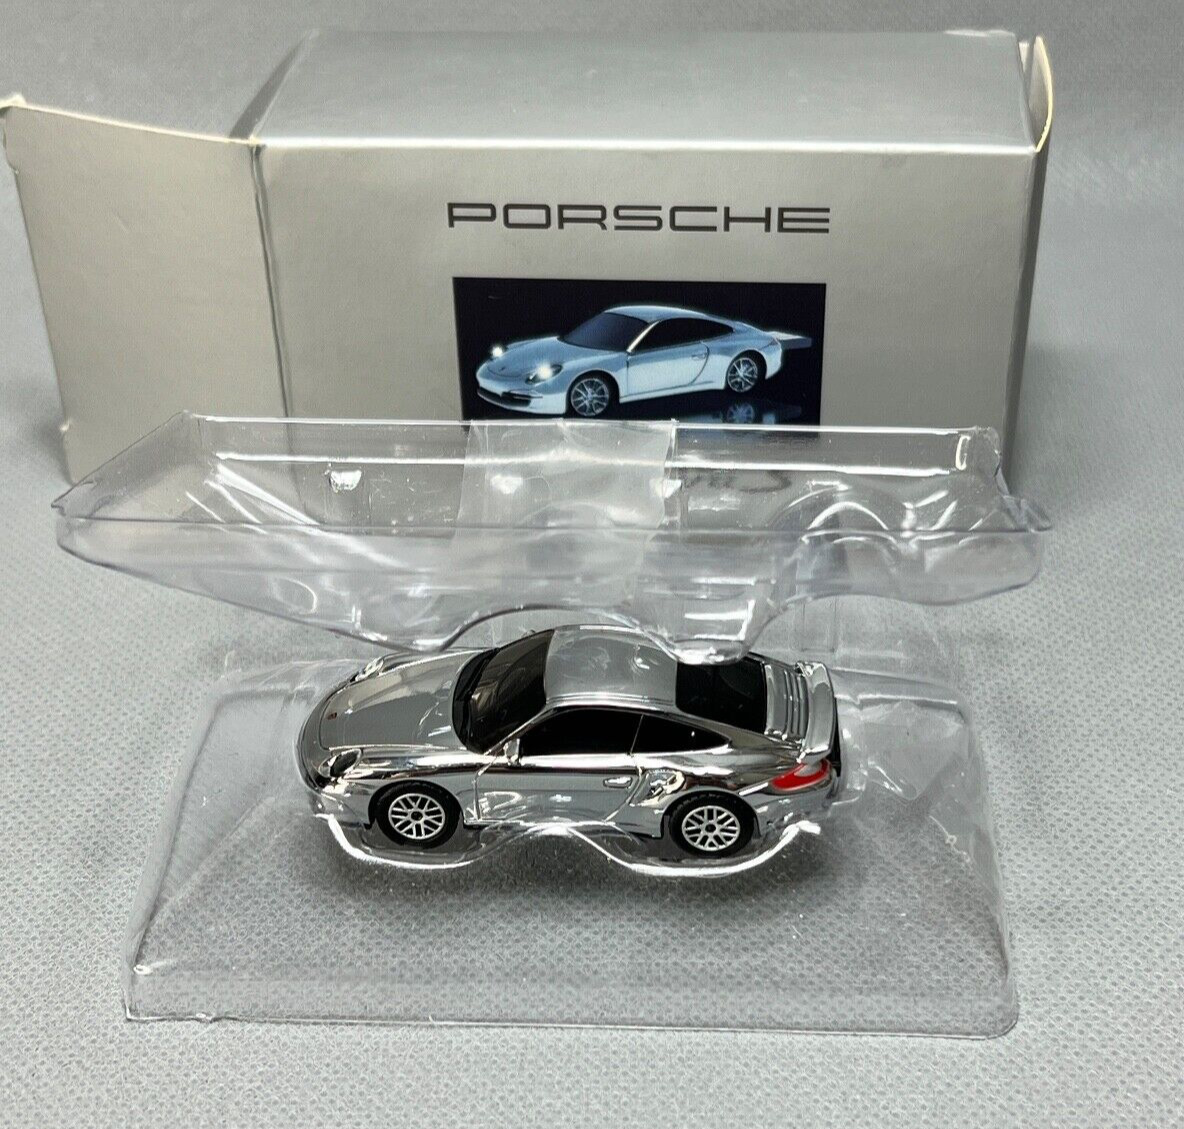 Porsche Design 911 Carrera S Car Minichamps Model USB Memory Stick 2GB 1:72 NIB